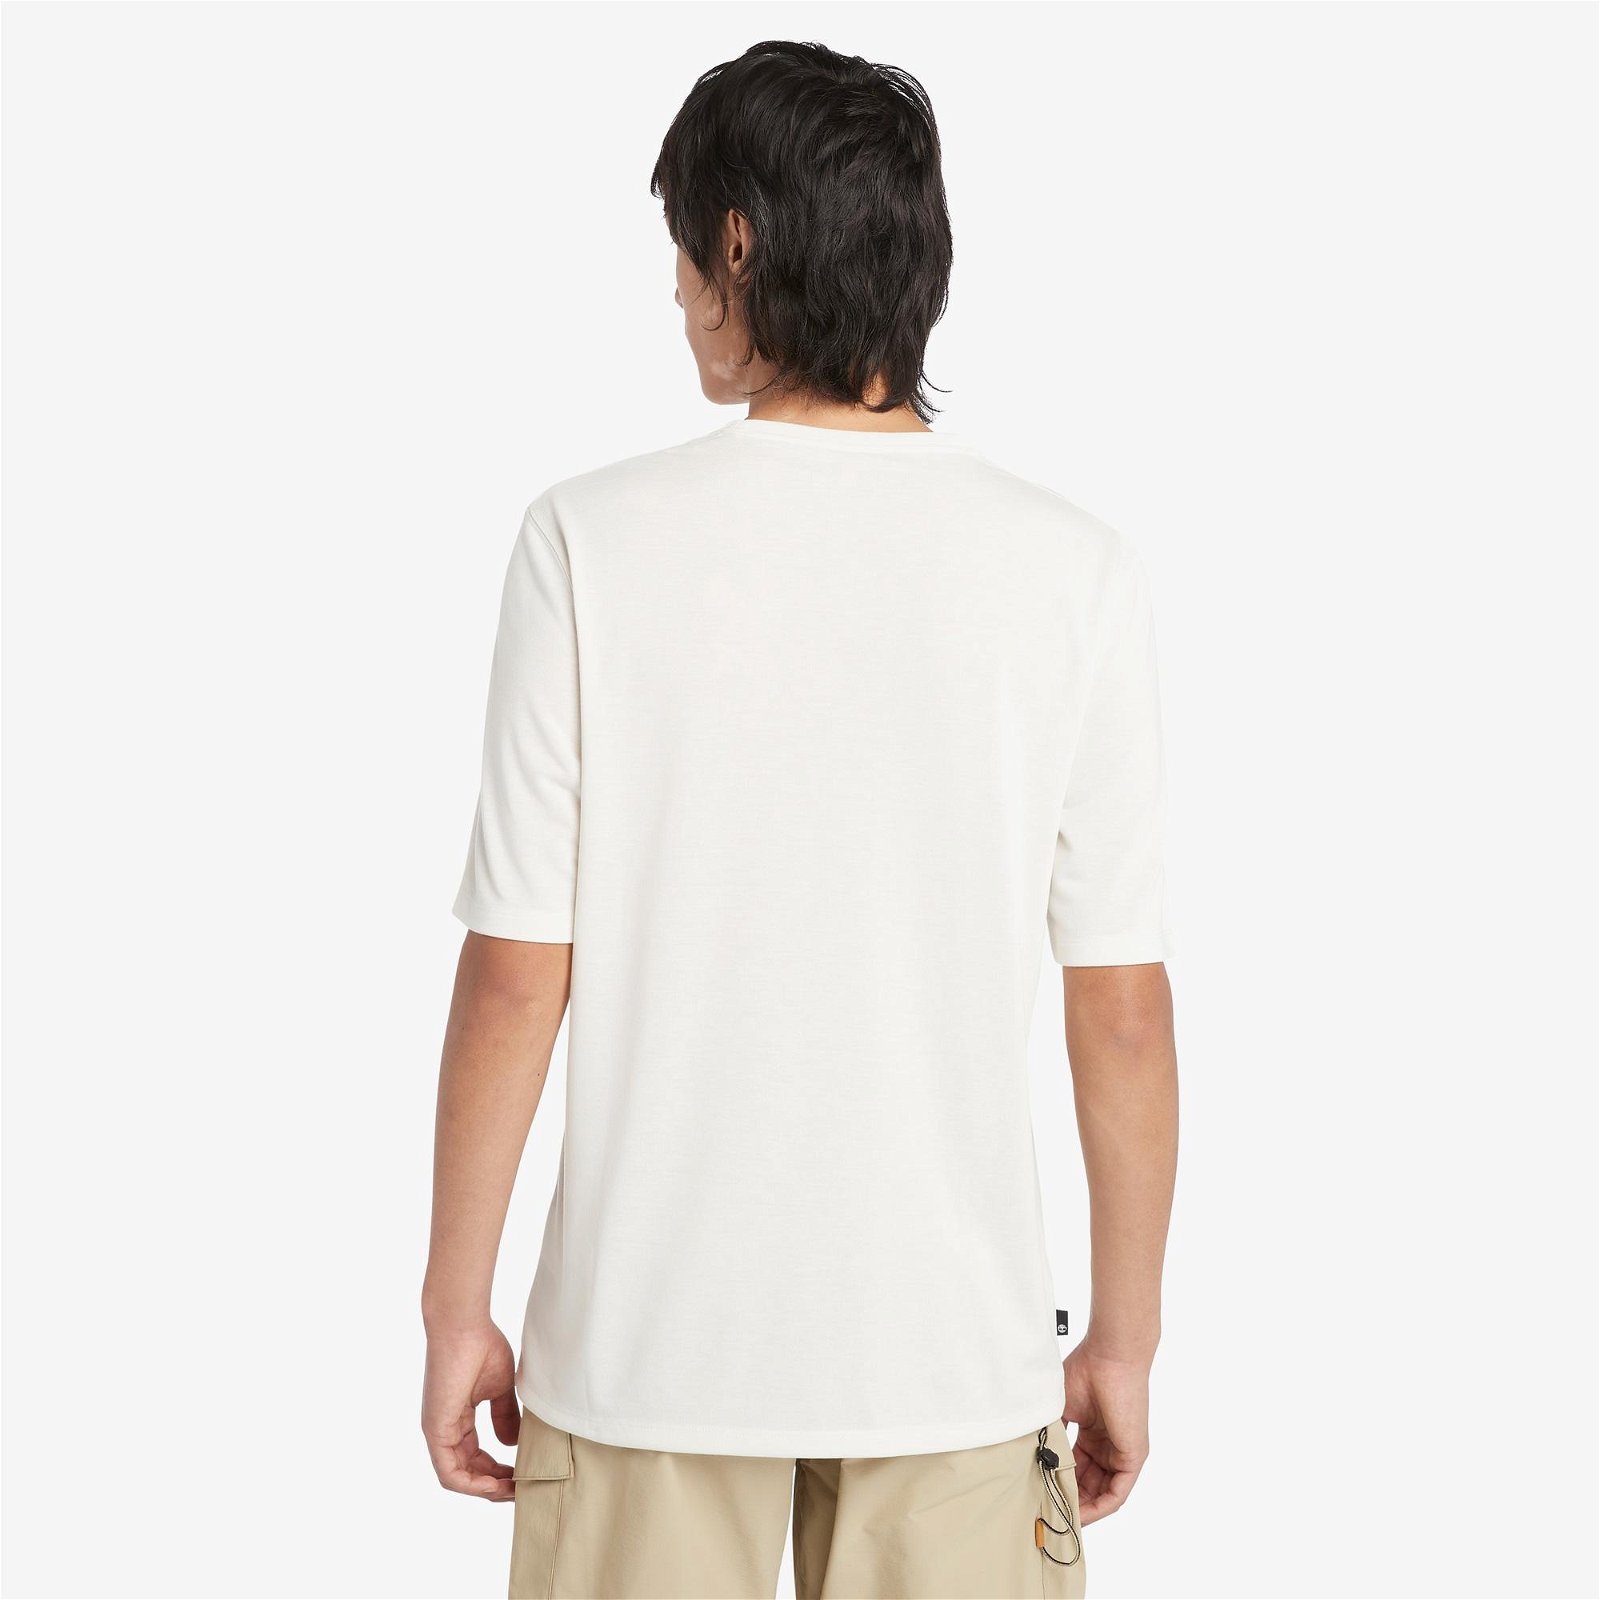 Timberland Anti-Uv Outdoor Graphic Erkek Beyaz T-Shirt